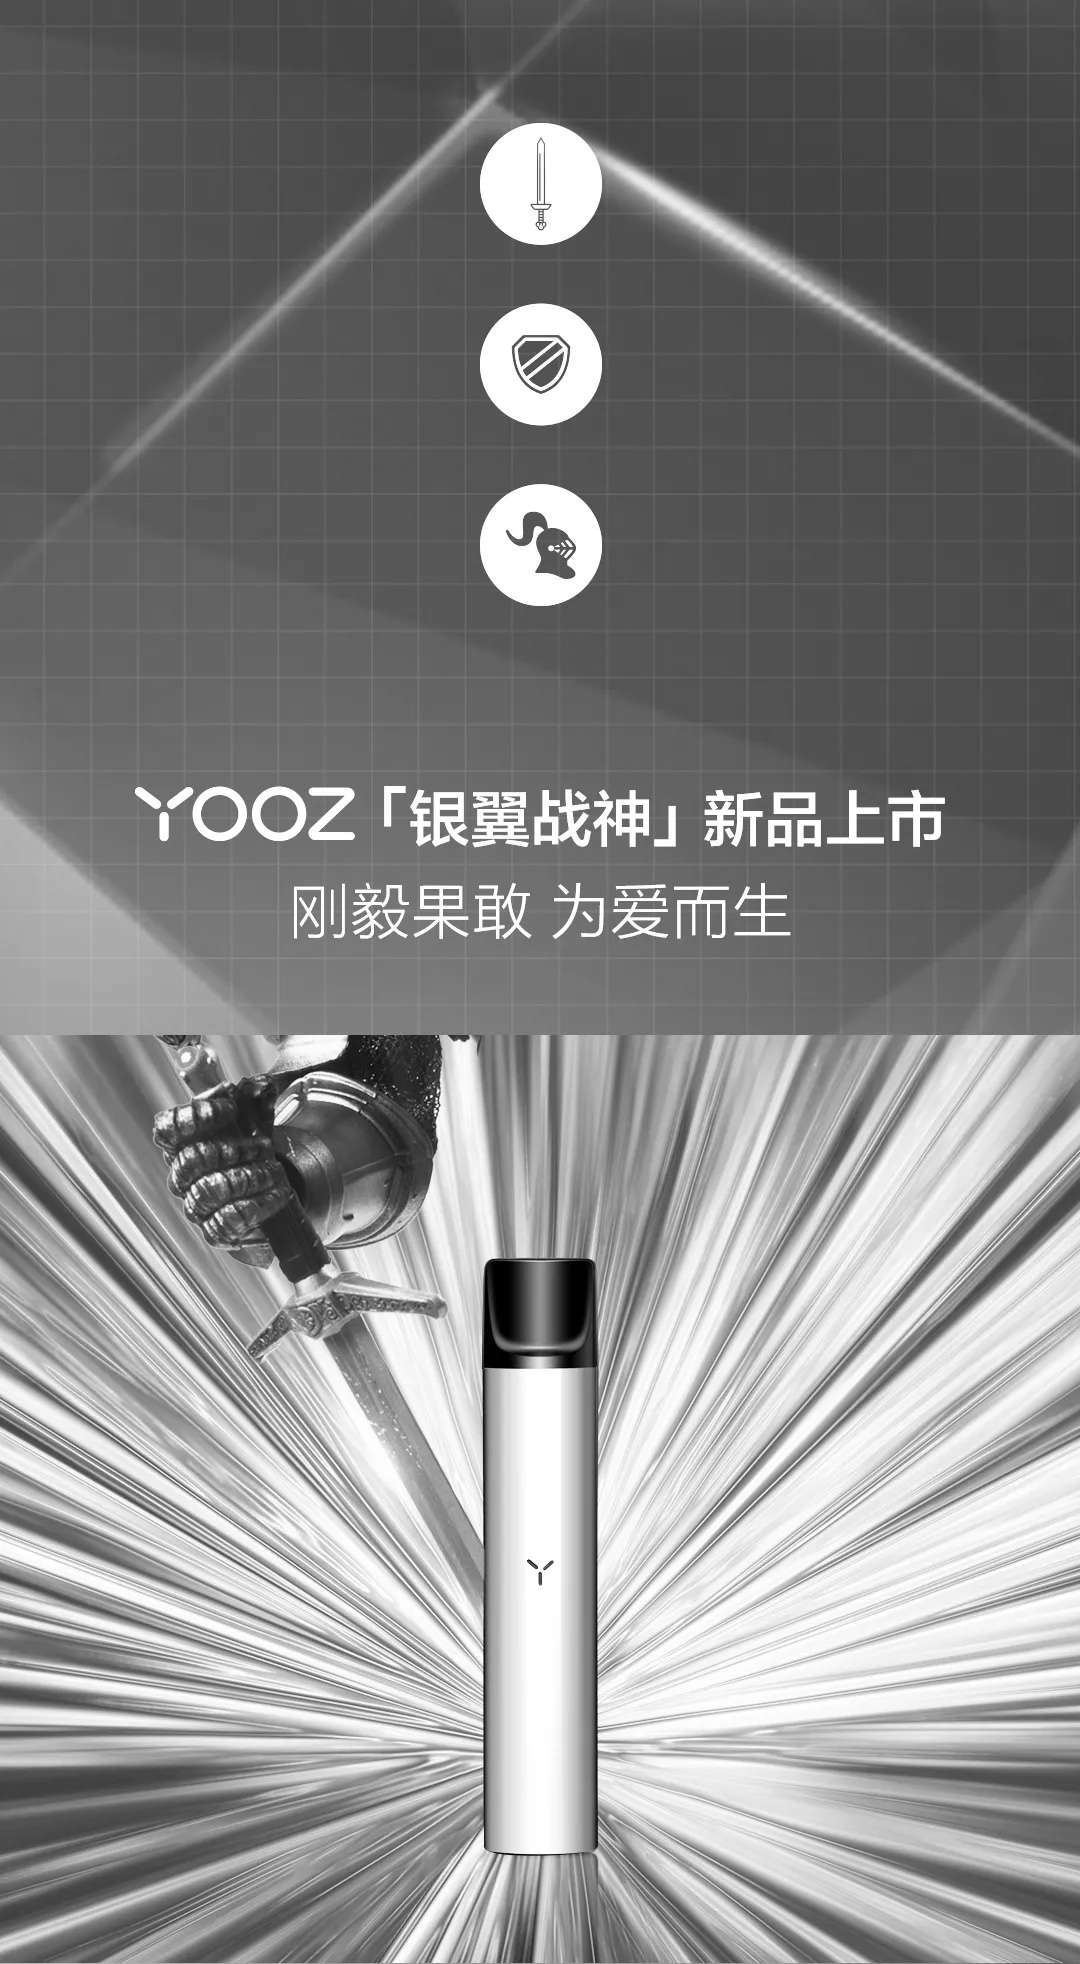 YOOZ柚子新品|银色高亮电子烟主机『银翼战神』上市 - 第2张